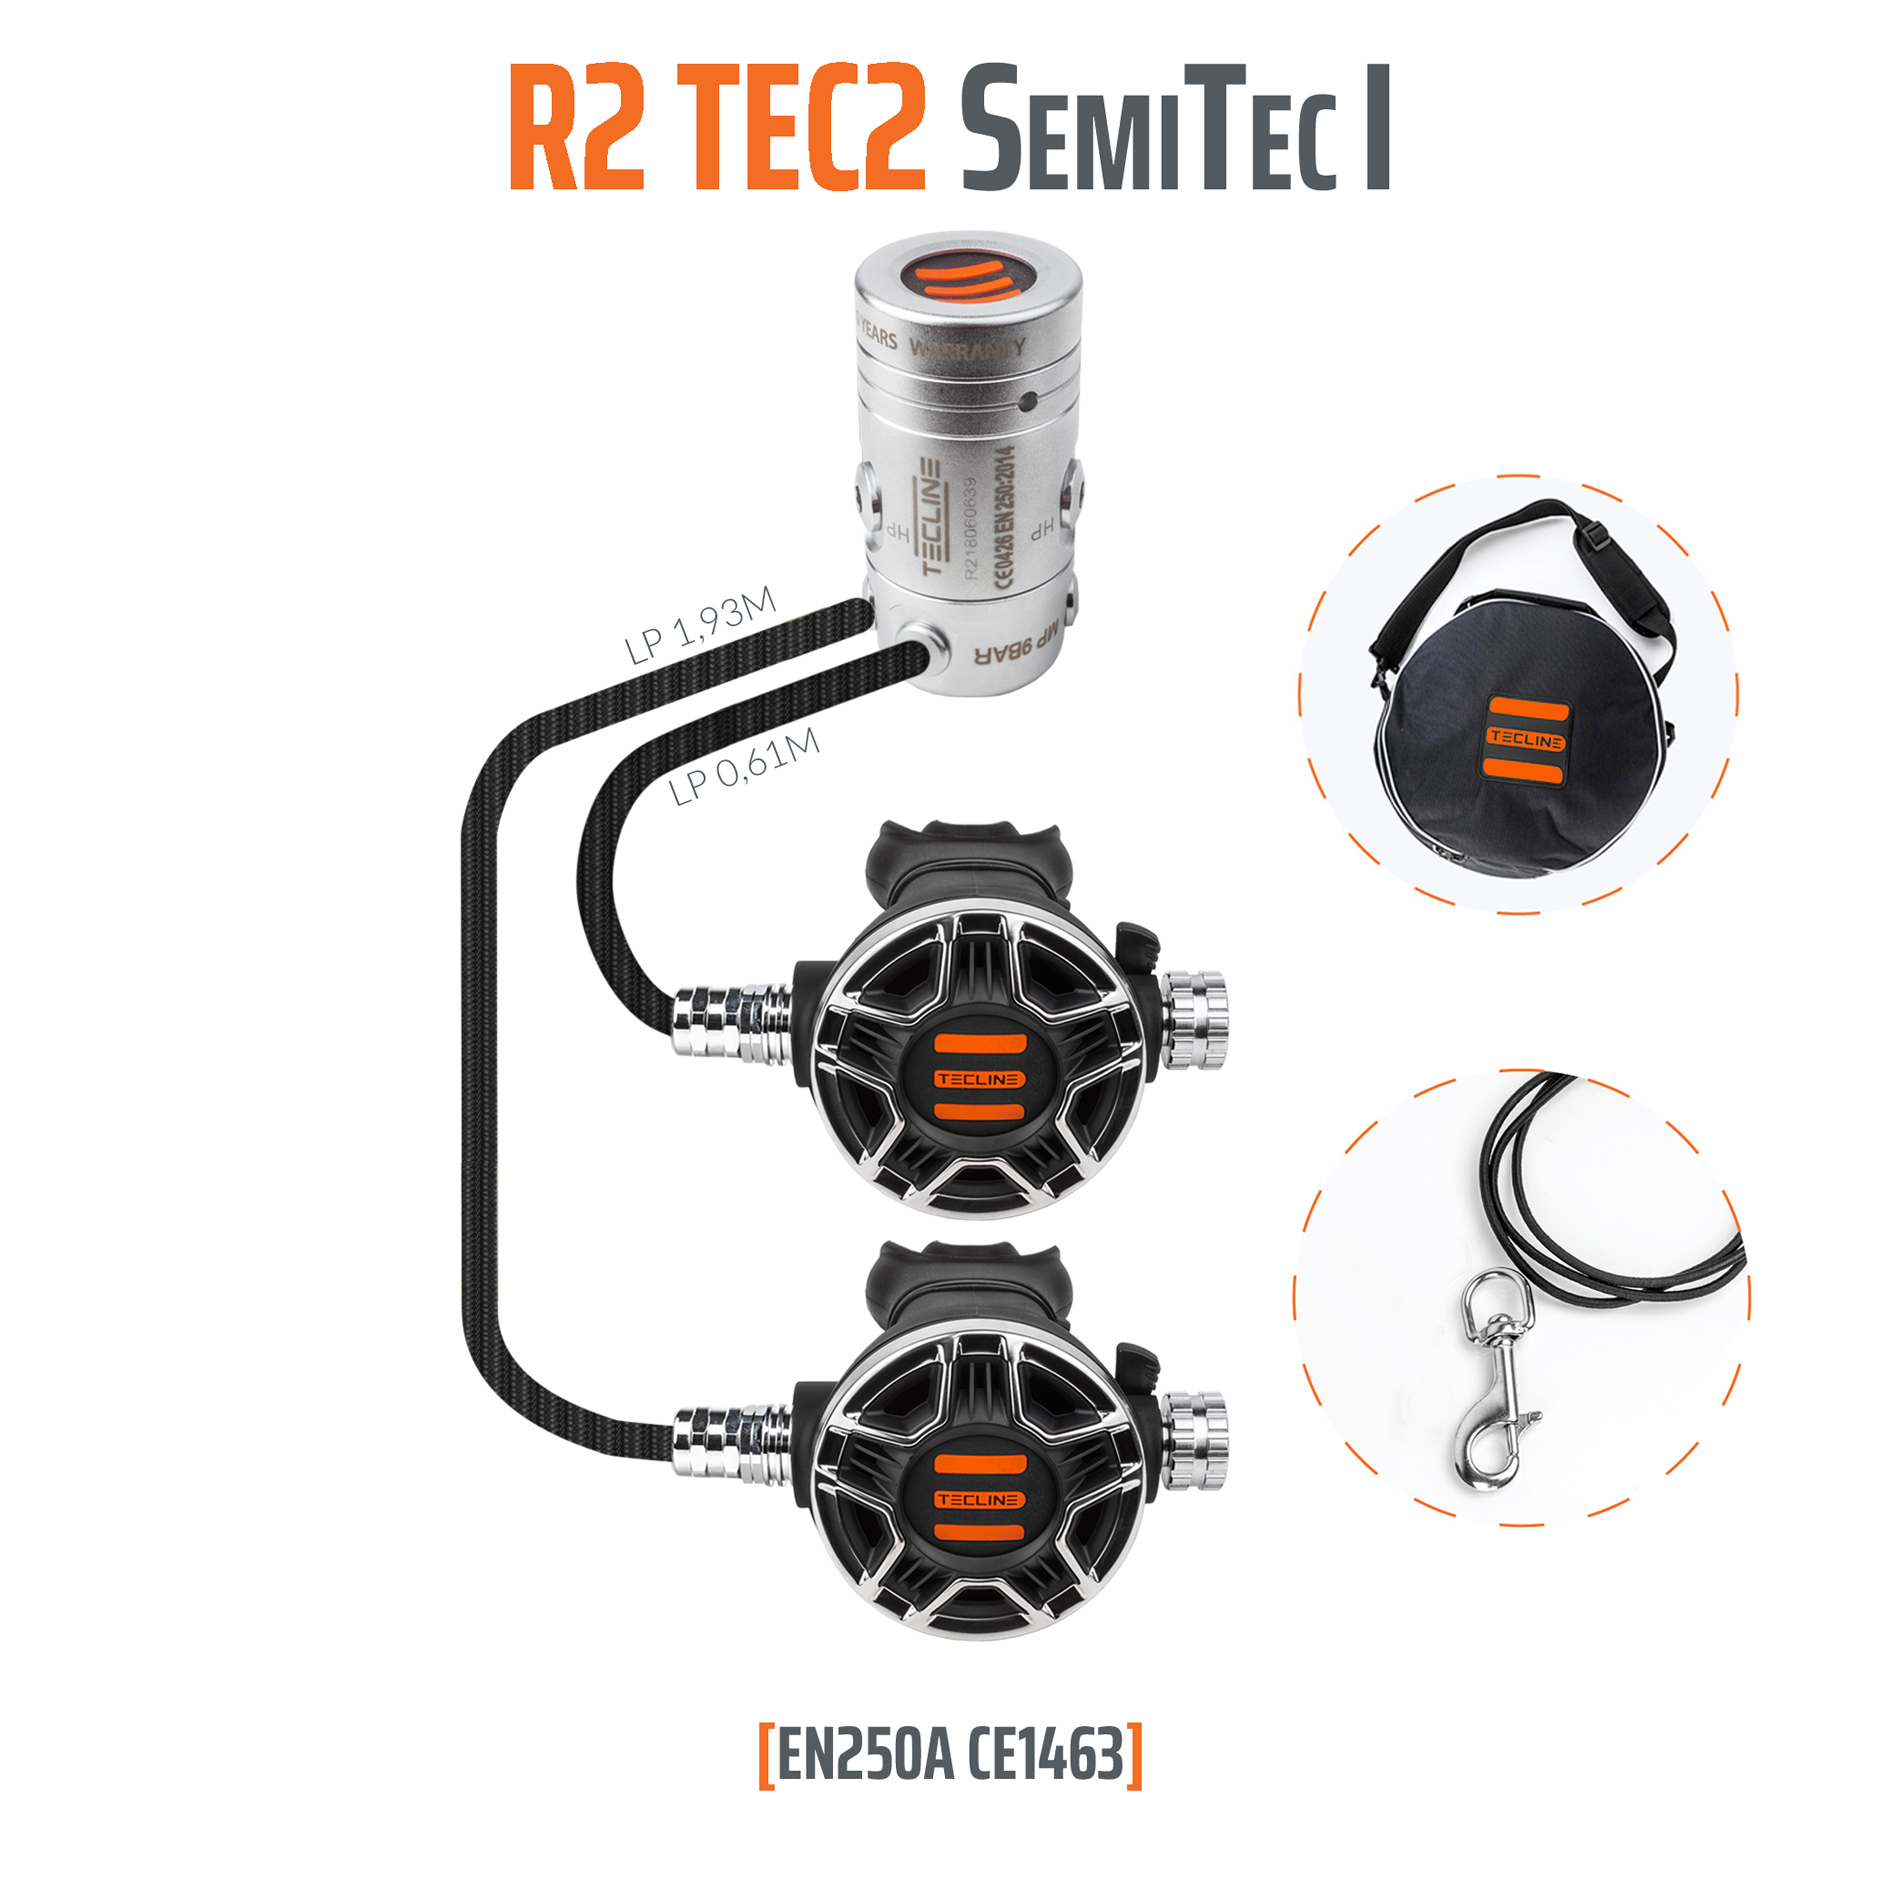 Tecline Regulator R2 TEC2 SemiTec I set – EN250A